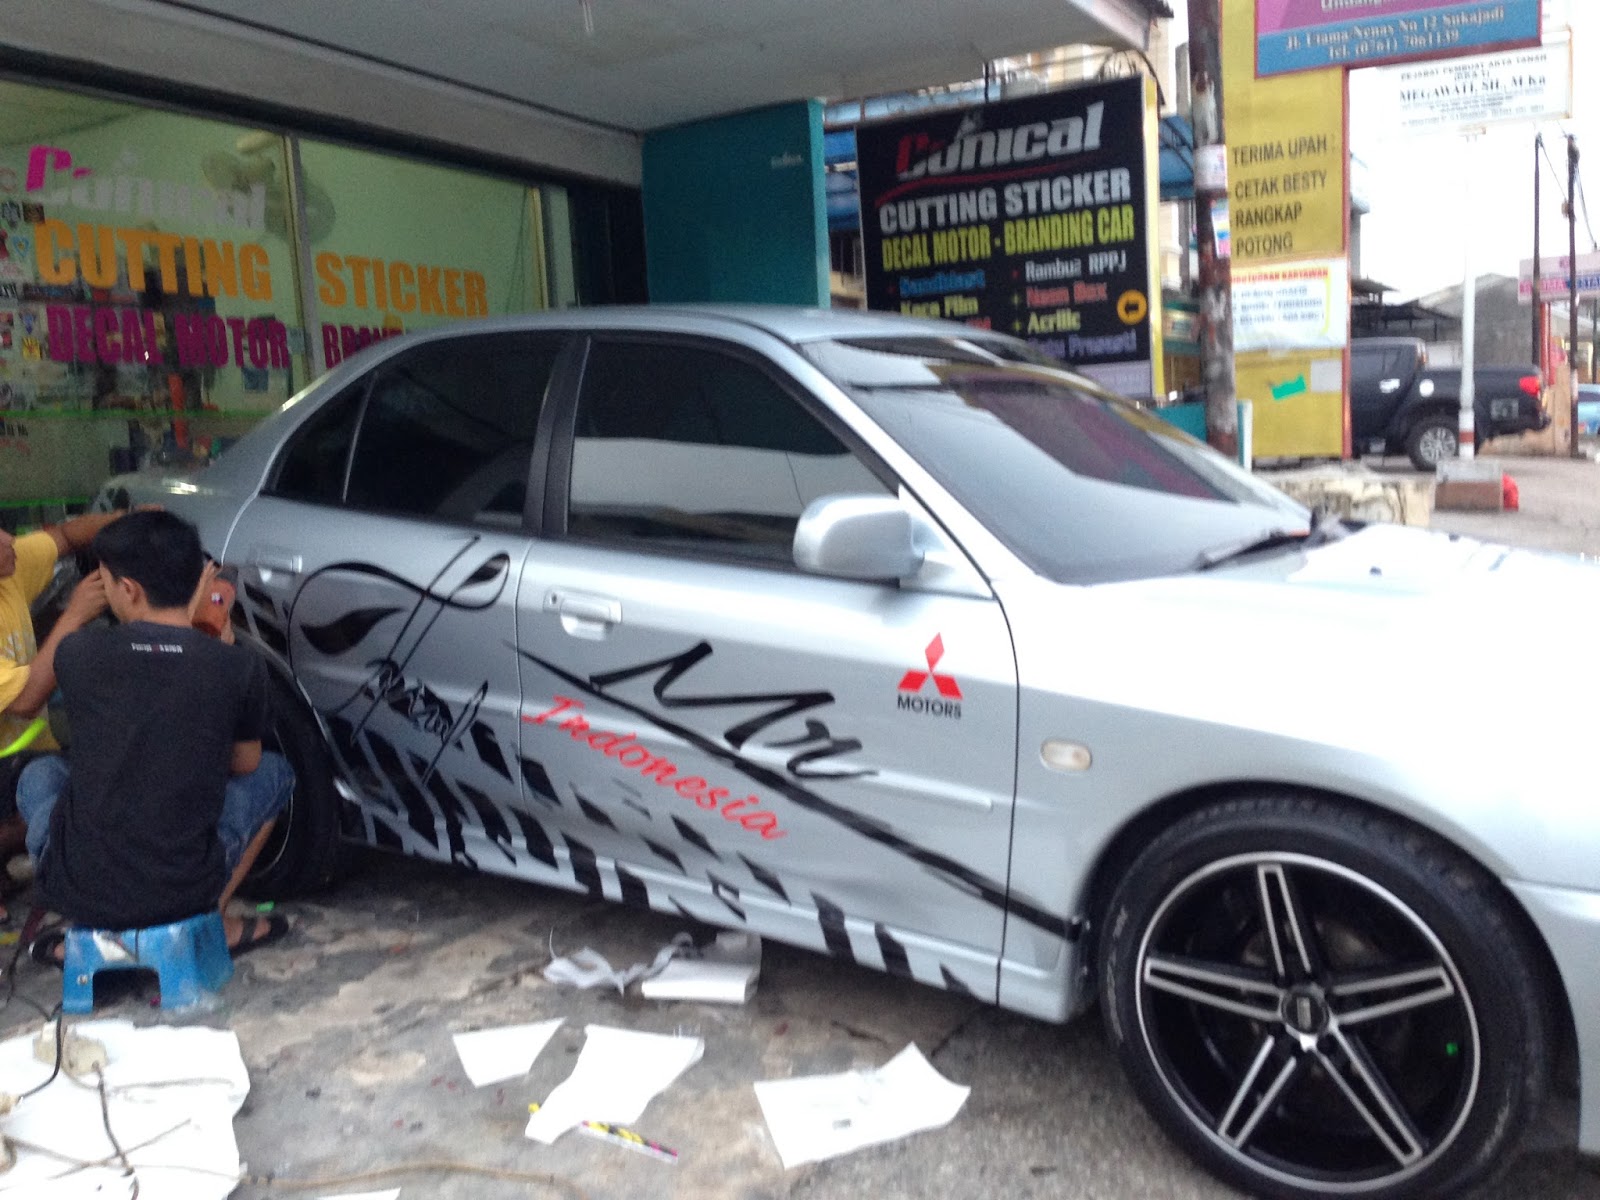 Cutting Sticker Mobil Dan Car Branding Di Pekanbaru Conical